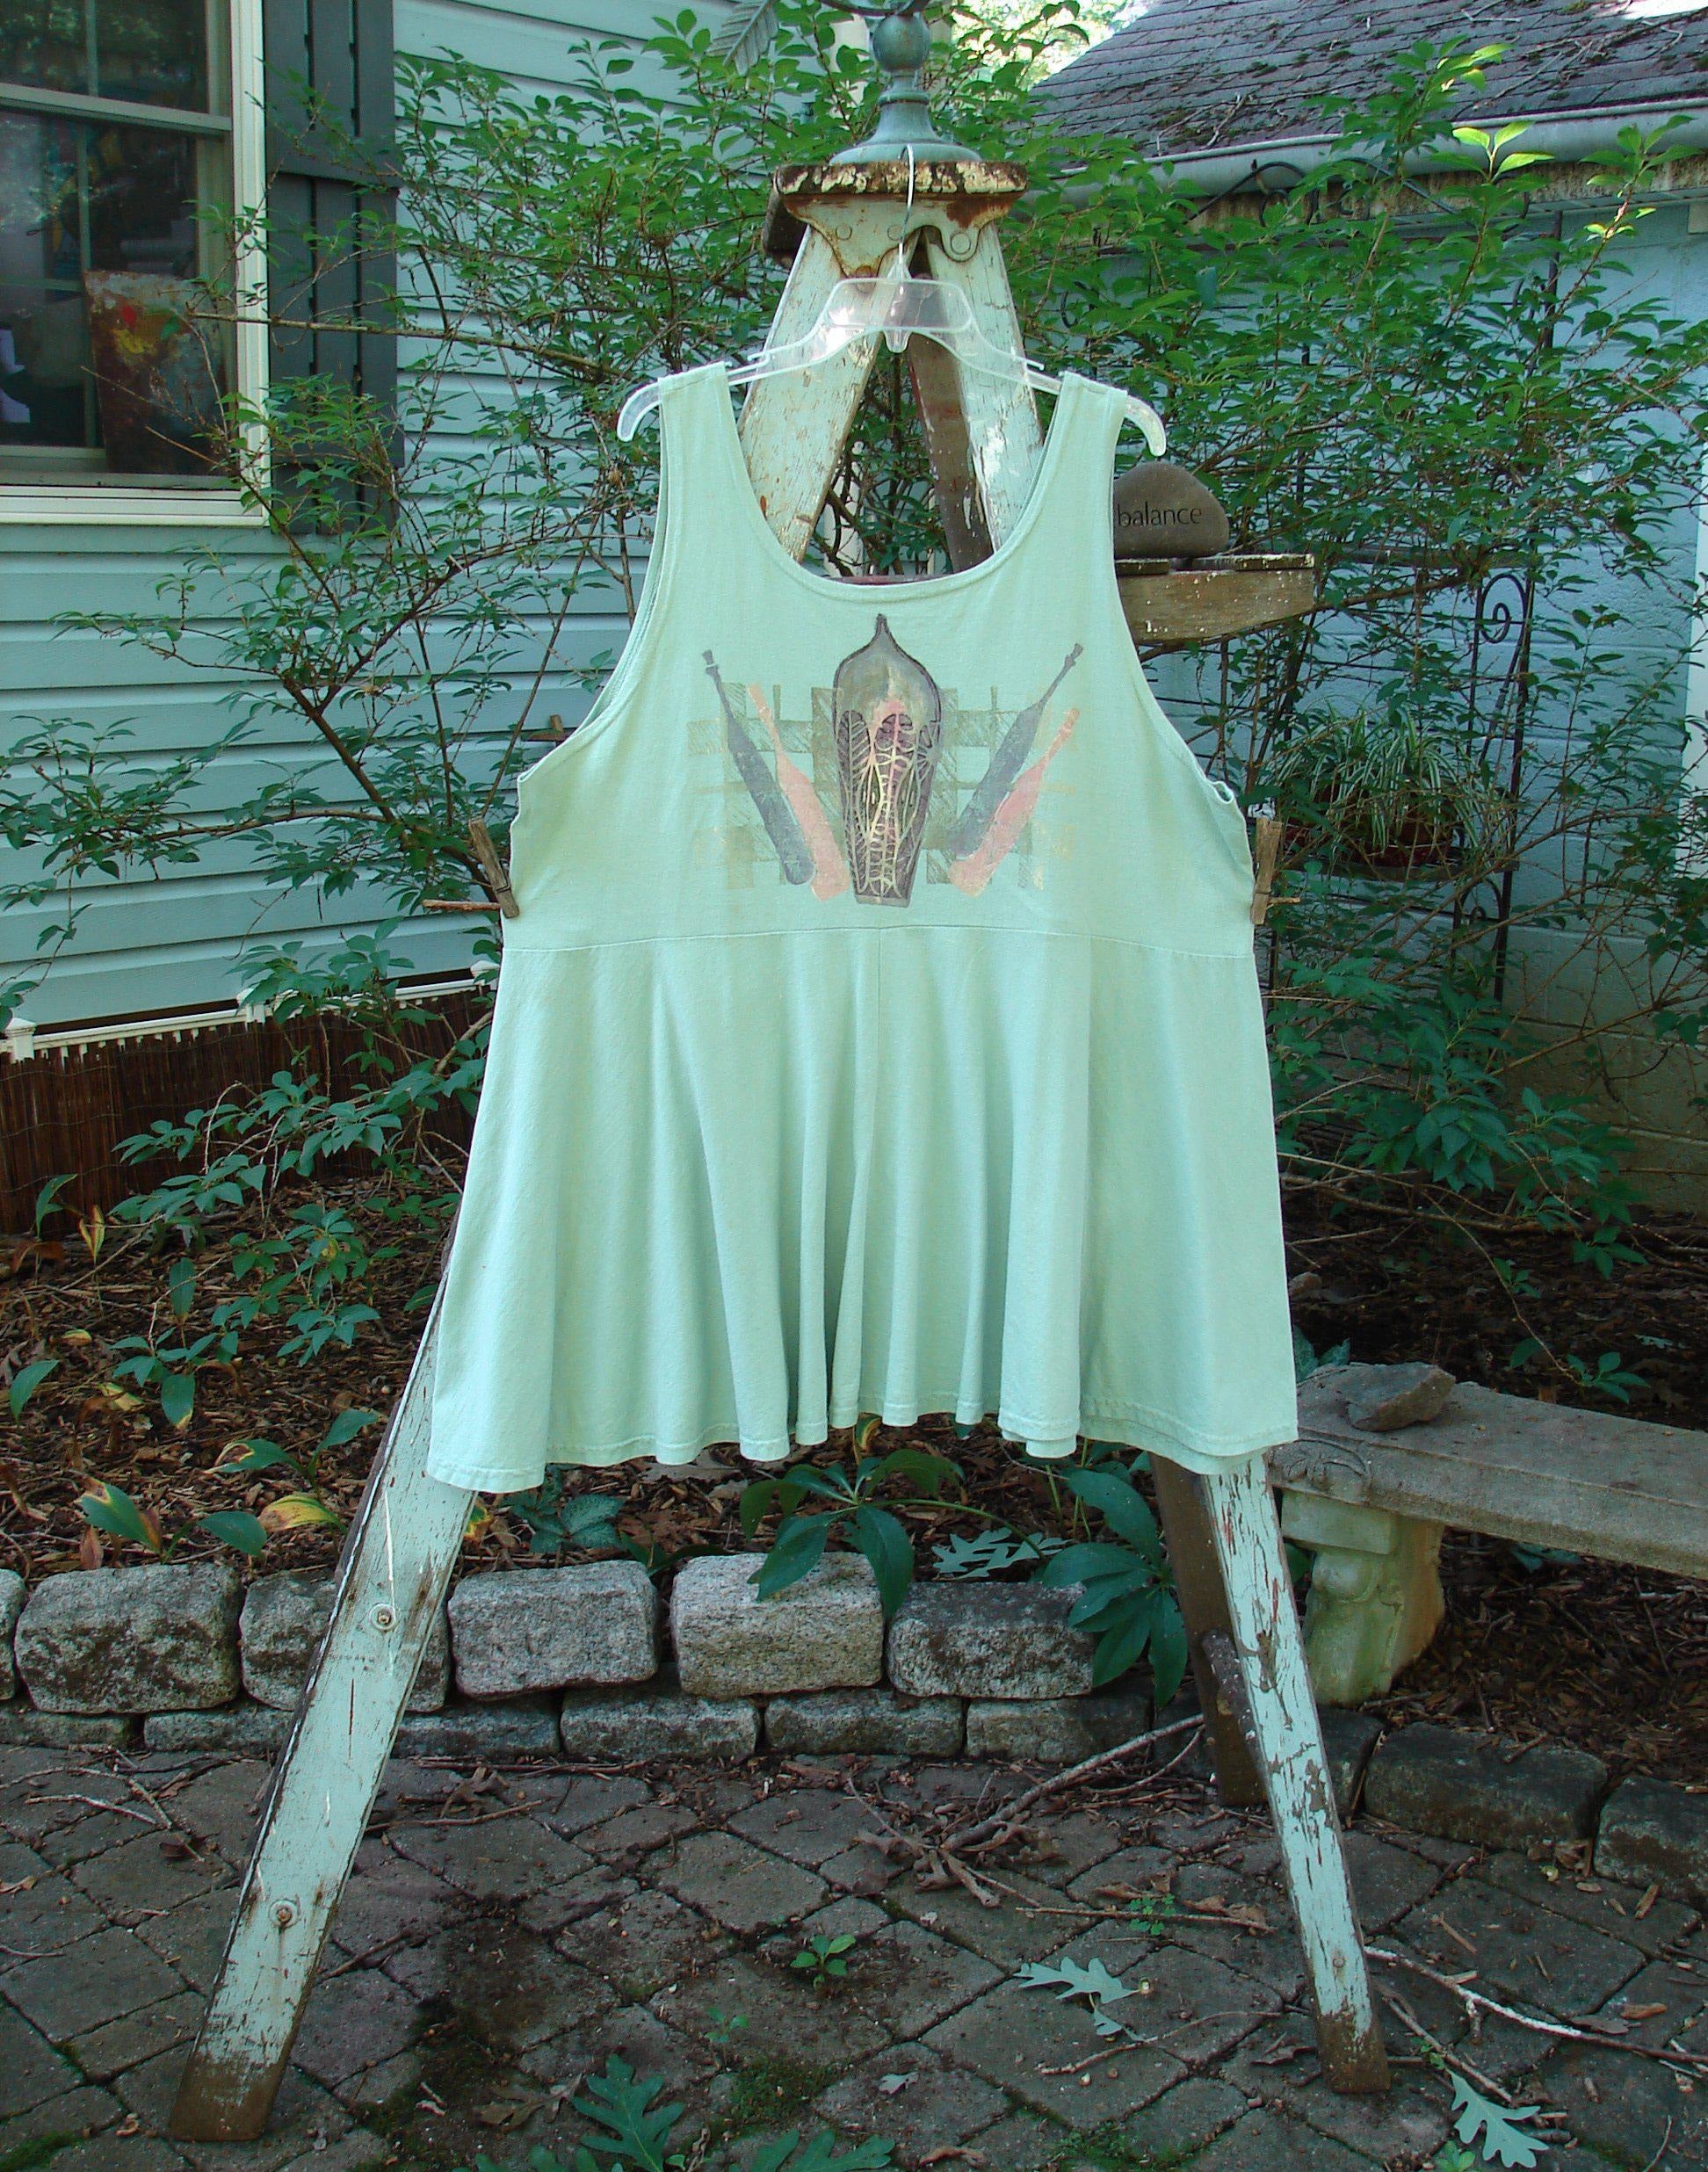 Image alt text: "1995 Patio Rose Dress Jumper Bottles in Dinette Green on a wooden ladder"